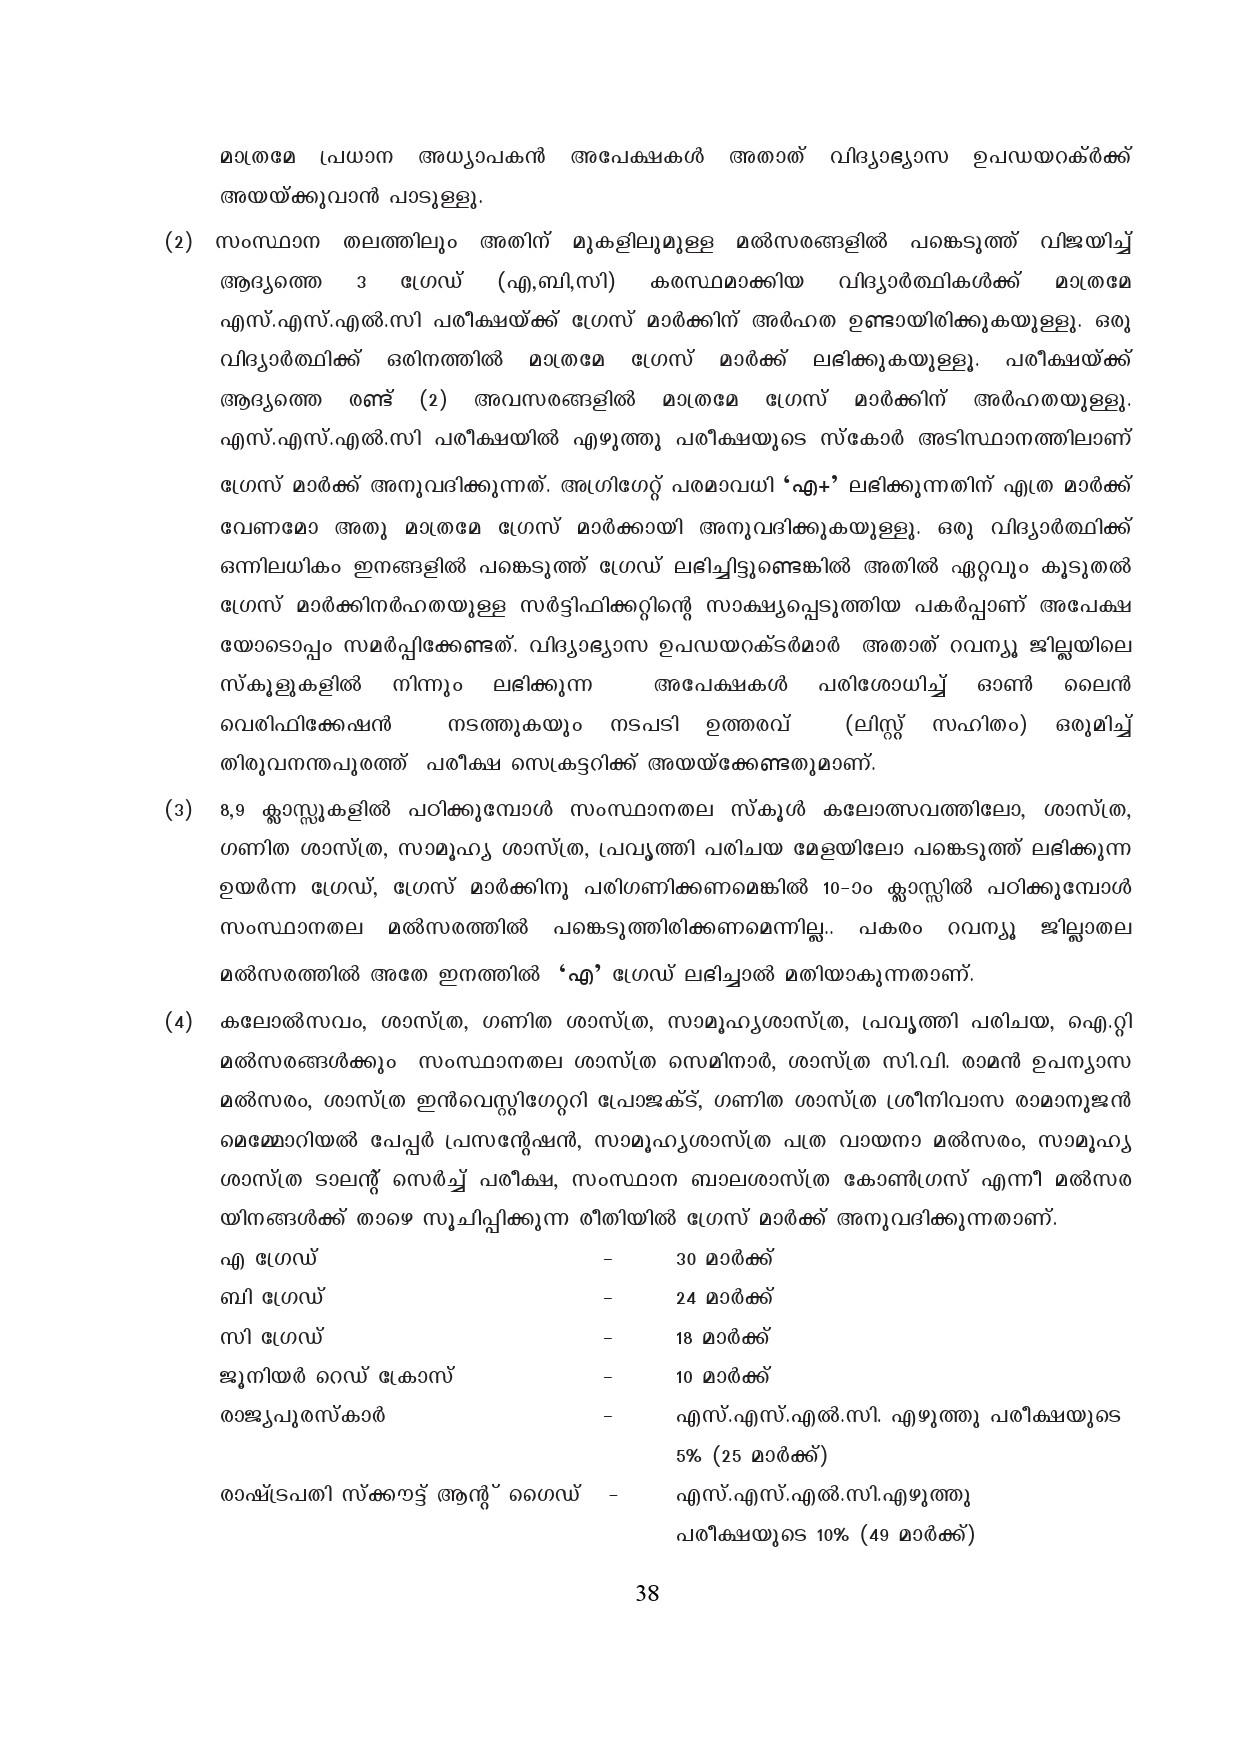 Kerala SSLC Exam Result 2019 - Notification Image 38